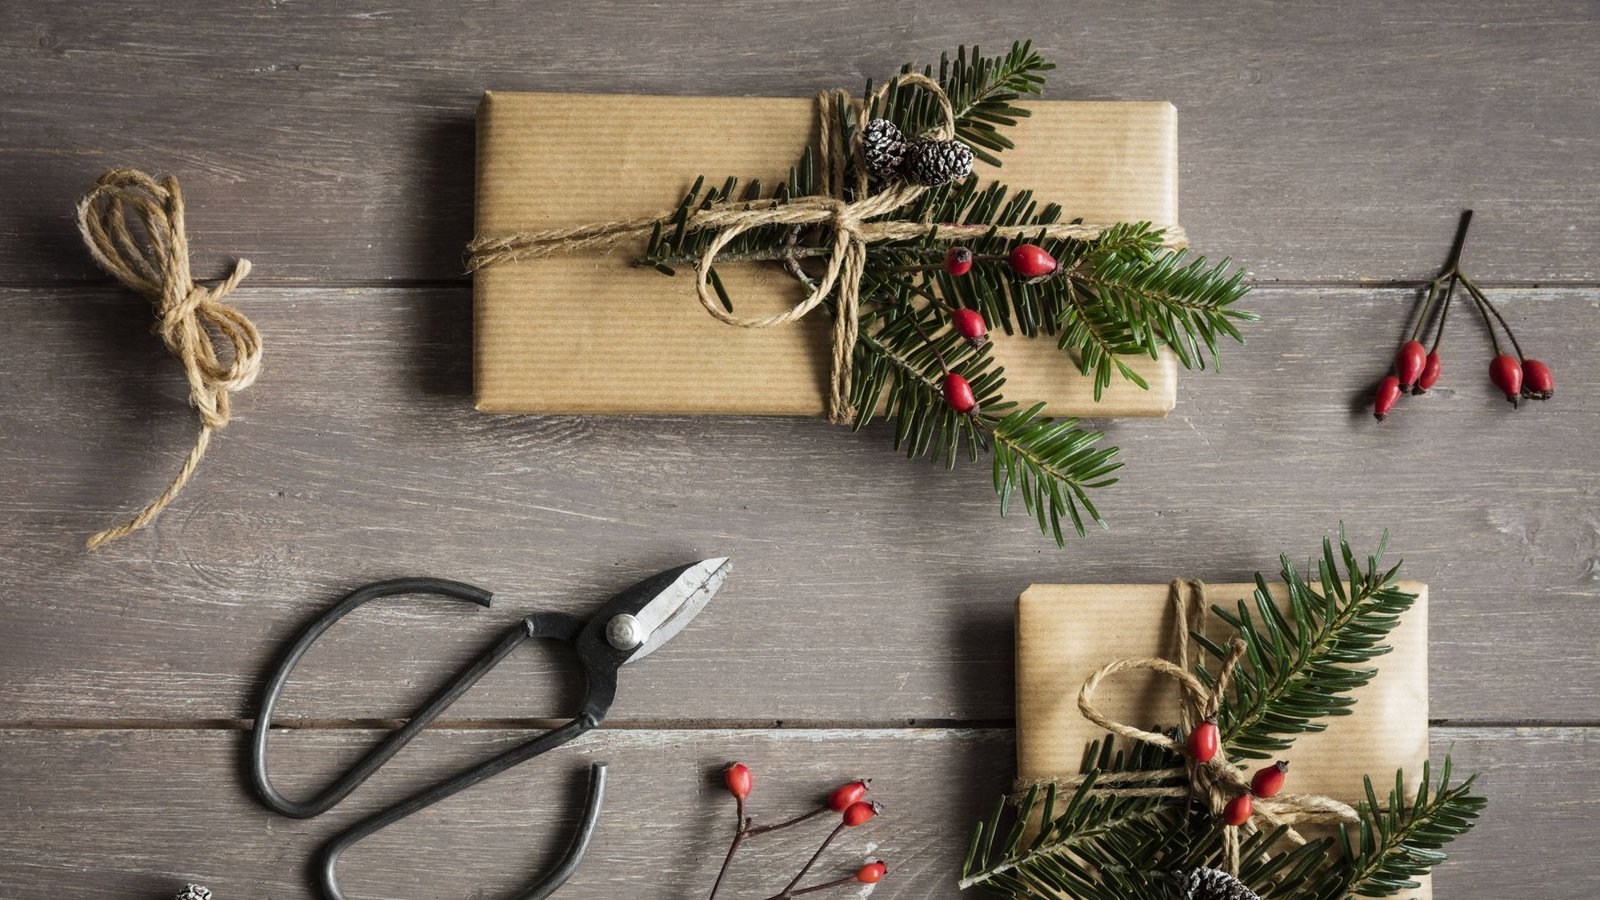 Wer ein günstiges Weihnachtsgeschenk sucht, kann sich eines basteln oder probiert einen der Tipps unserer Redaktion.Foto: /Eva Gruendemann